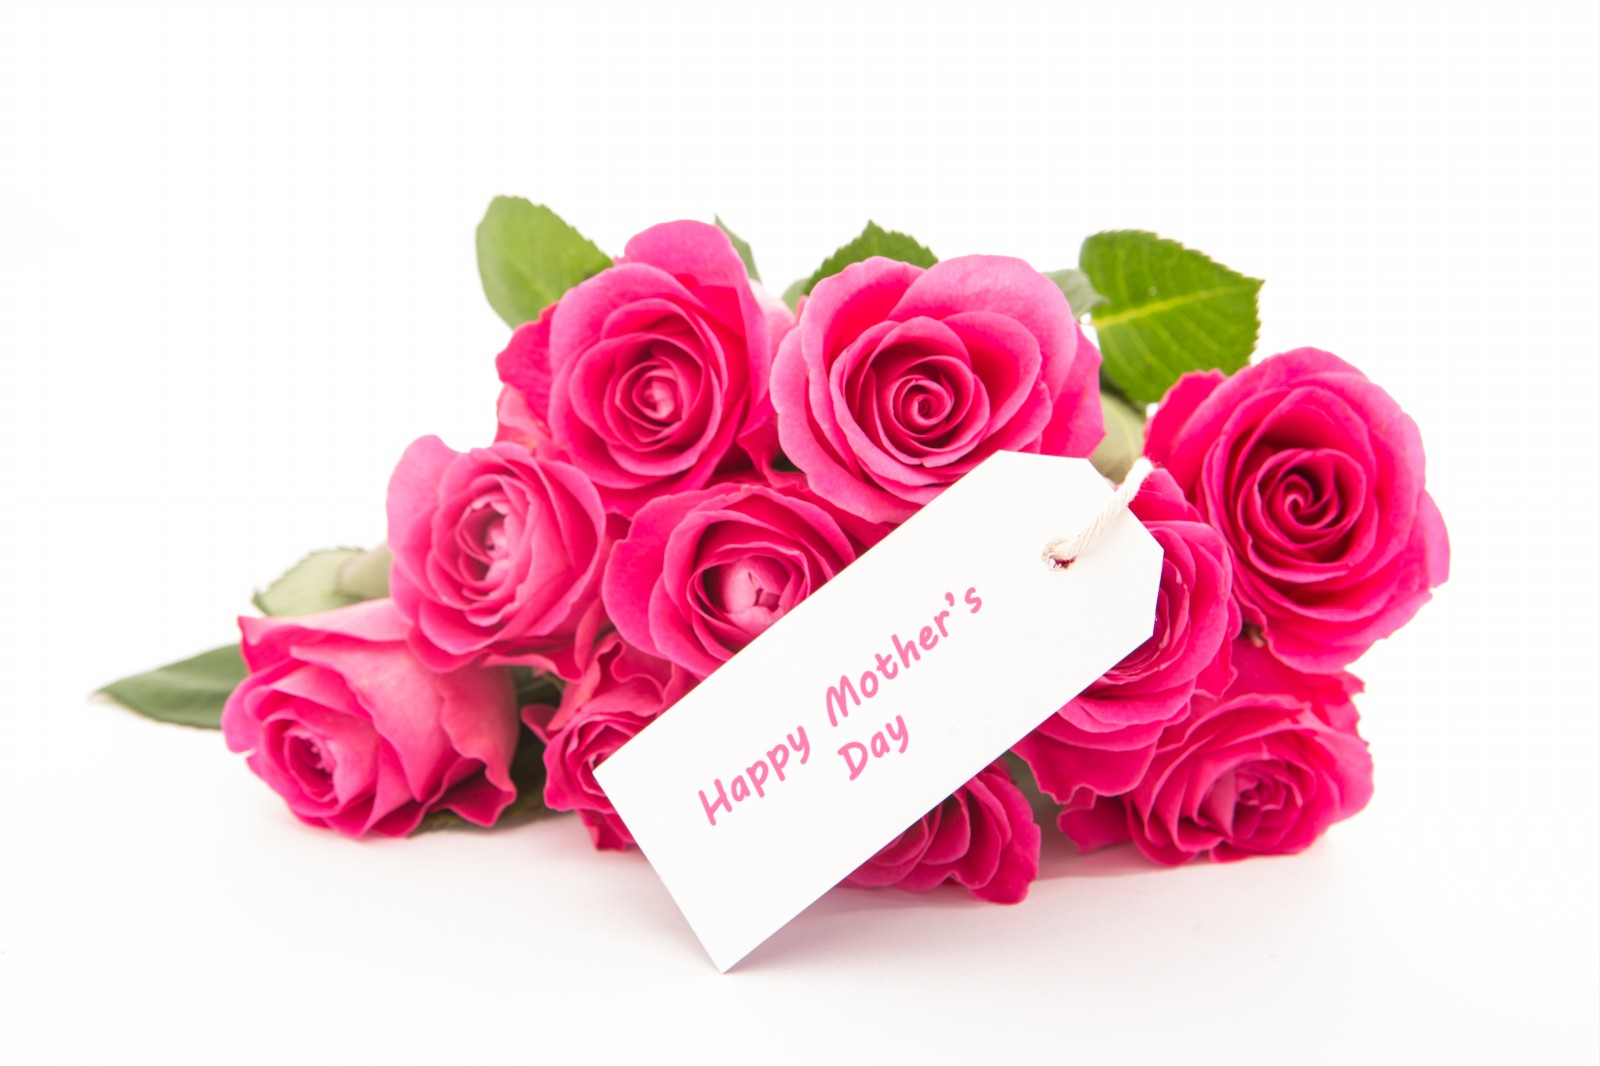 dia de las madres fondos de escritorio mensajes,rosa,rosas de jardín,rosado,flor,ramo de flores